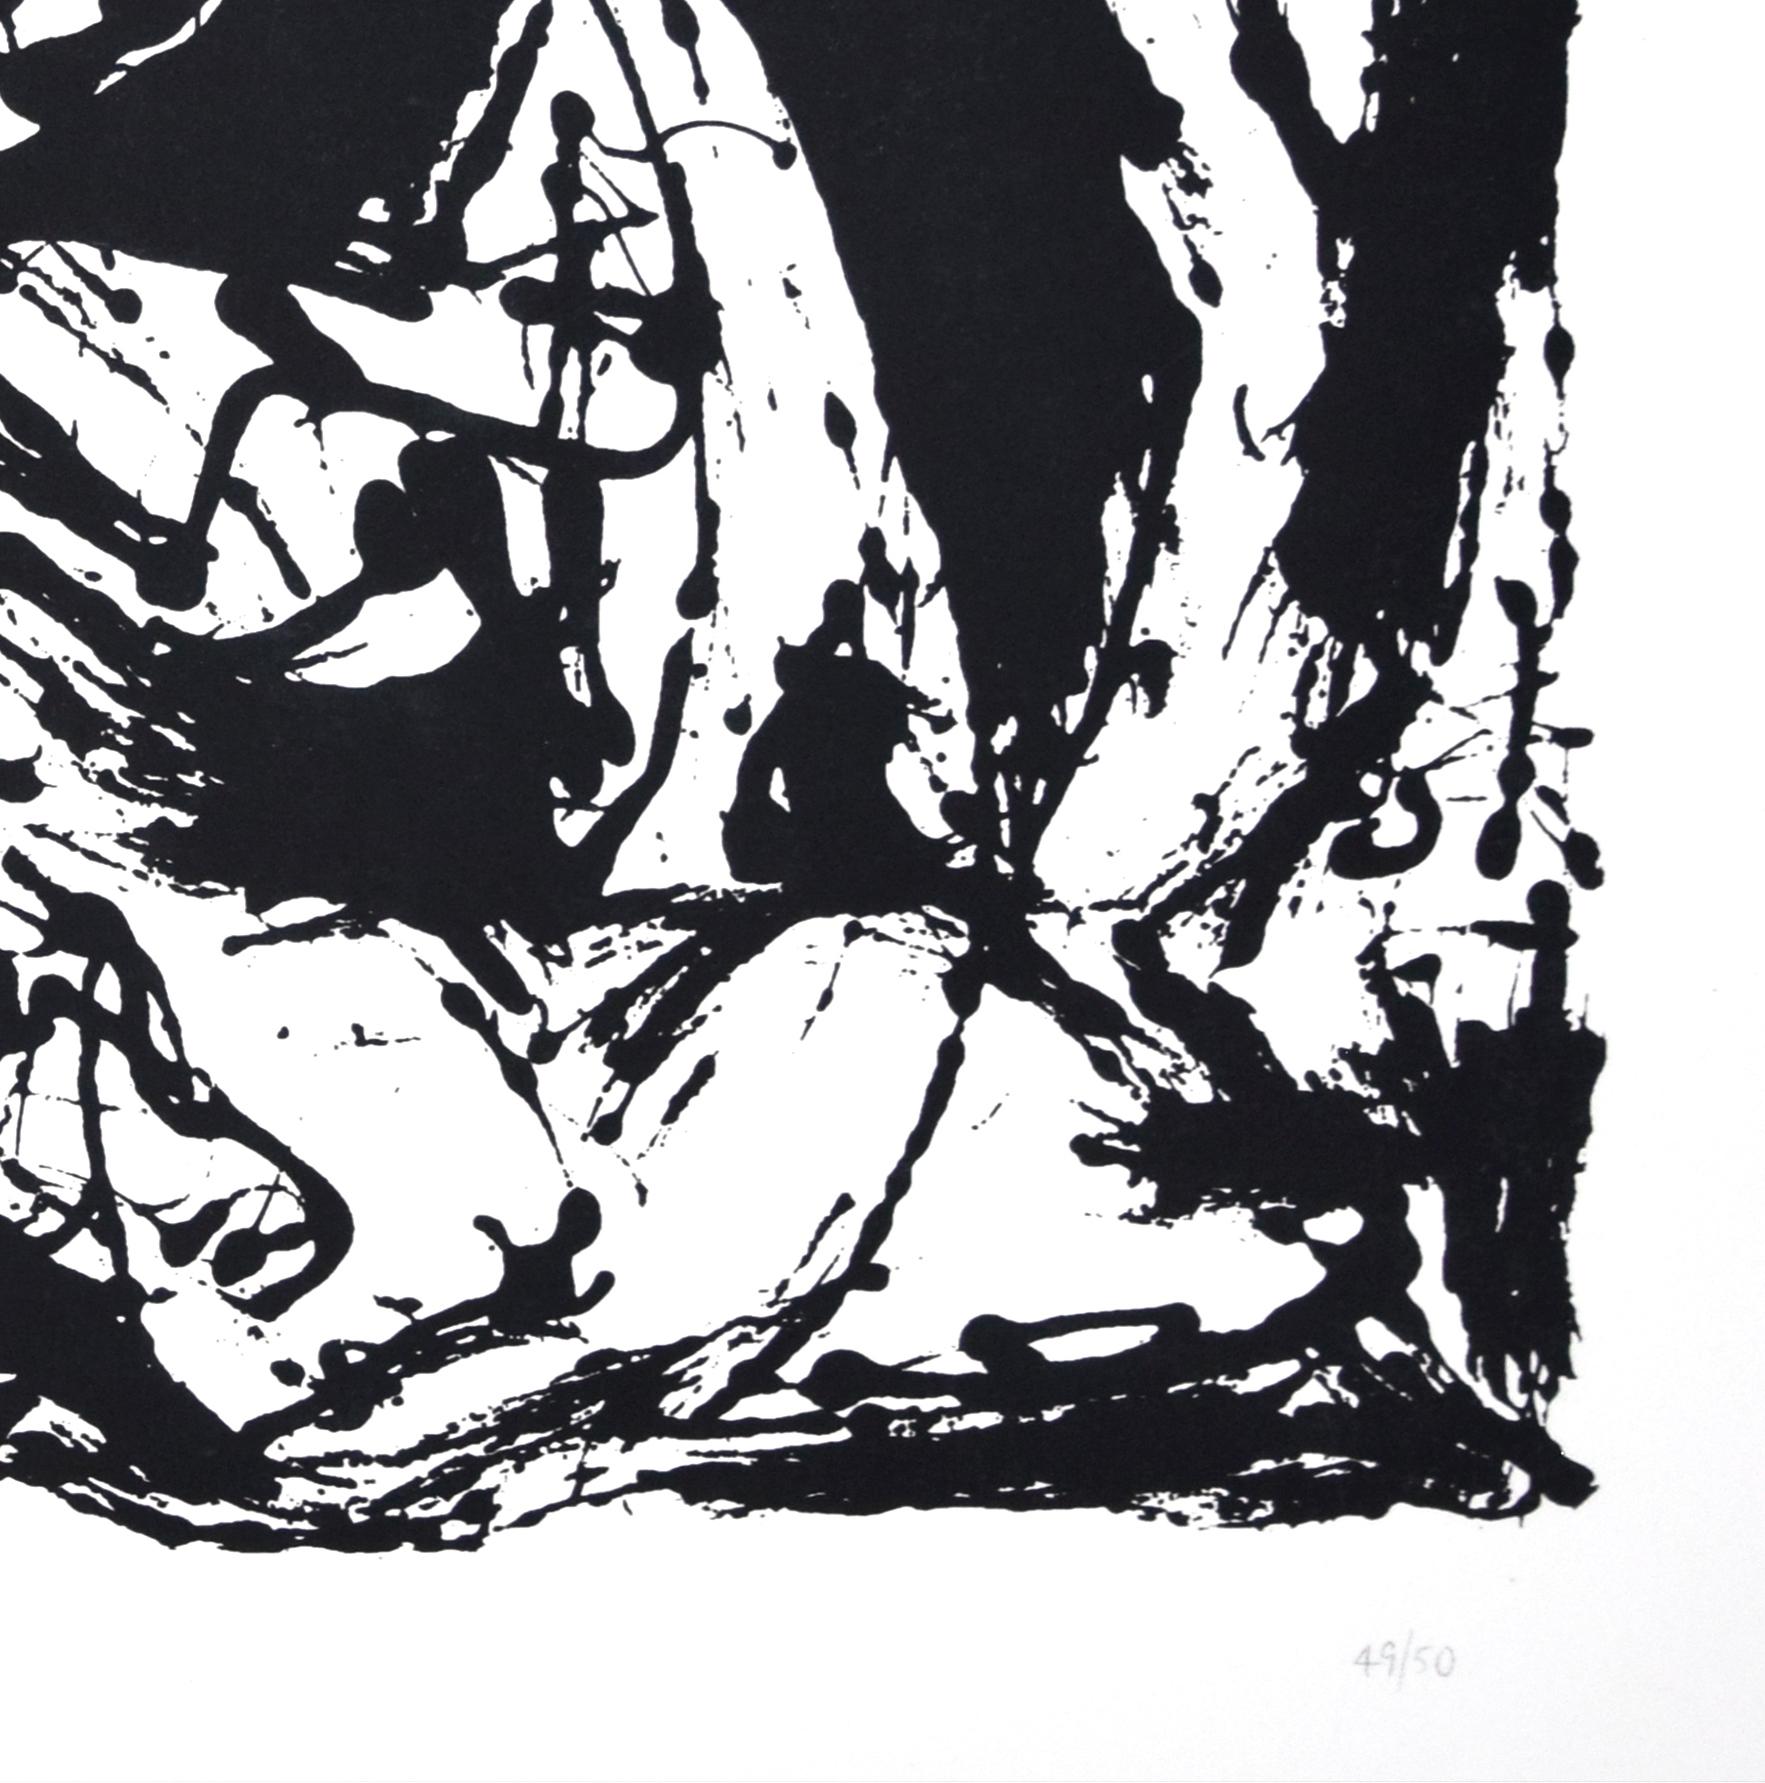 Ohne Titel, CR1095 (nach Gemälde Nummer 22, CR344), 1951, gedruckt 1964 (Abstrakter Expressionismus), Print, von Jackson Pollock